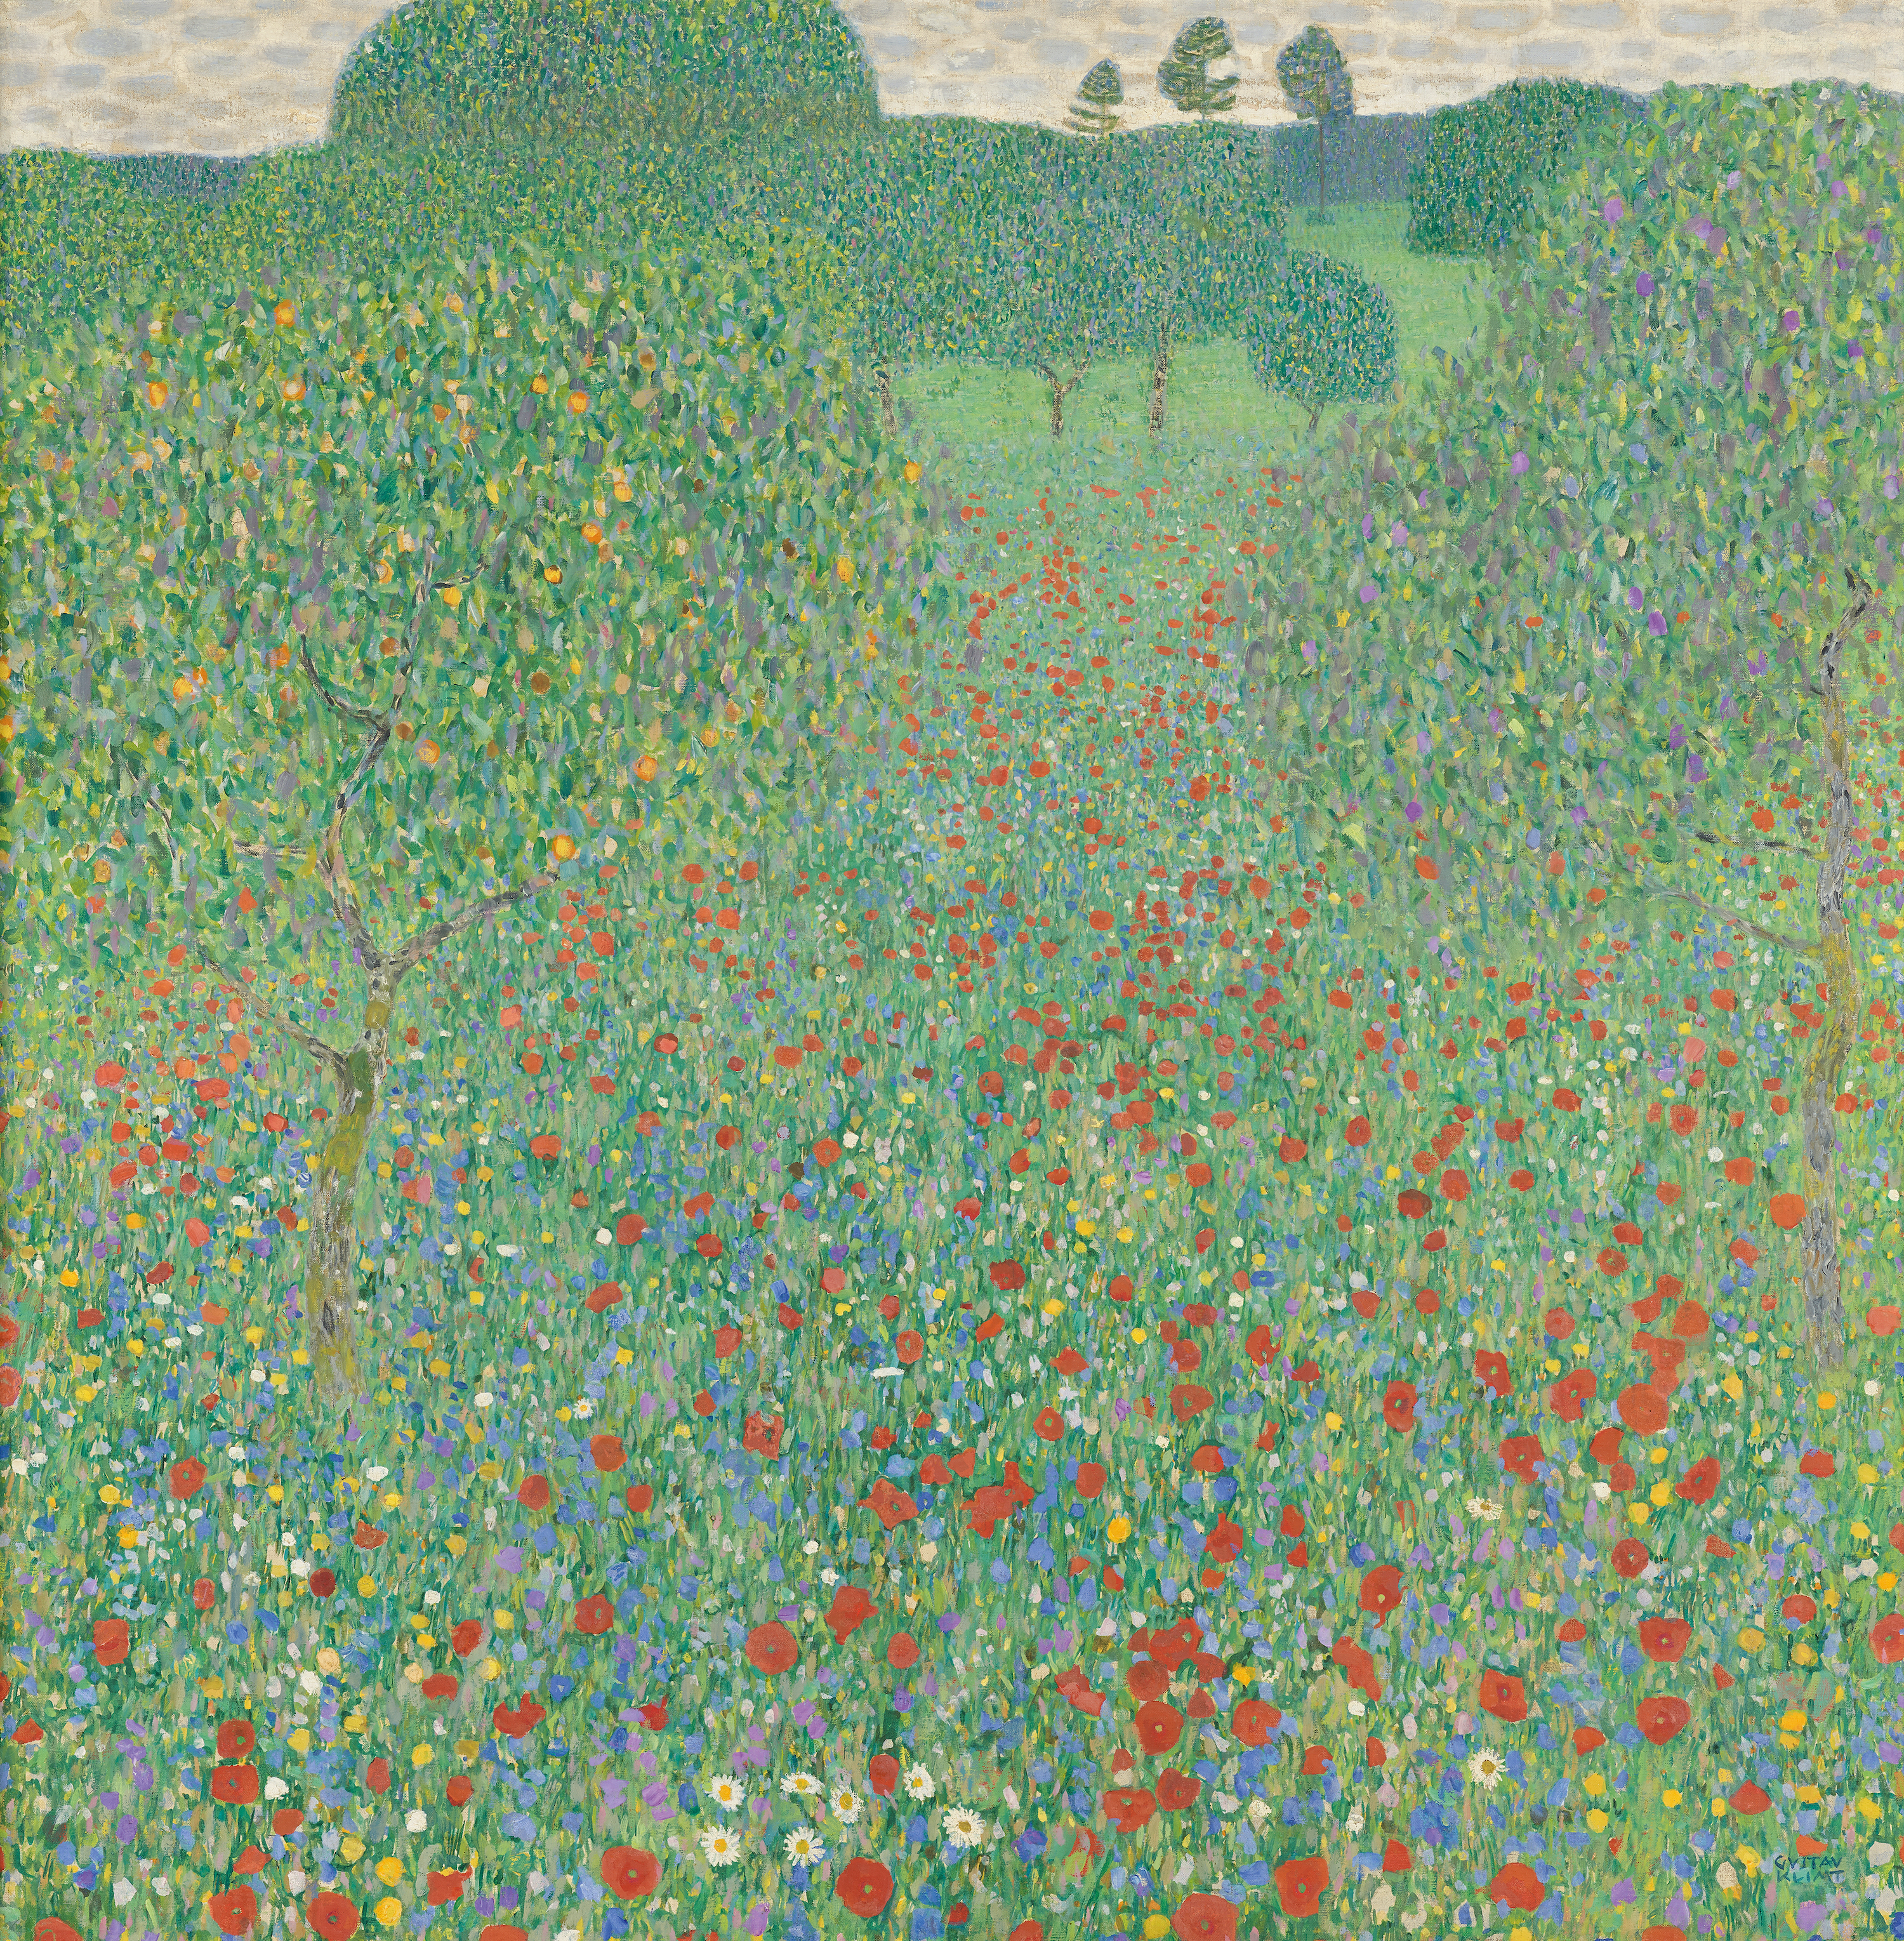 Campo de amapolas by Gustav Klimt - 1907 - 110 x 110 cm Österreichische Galerie Belvedere